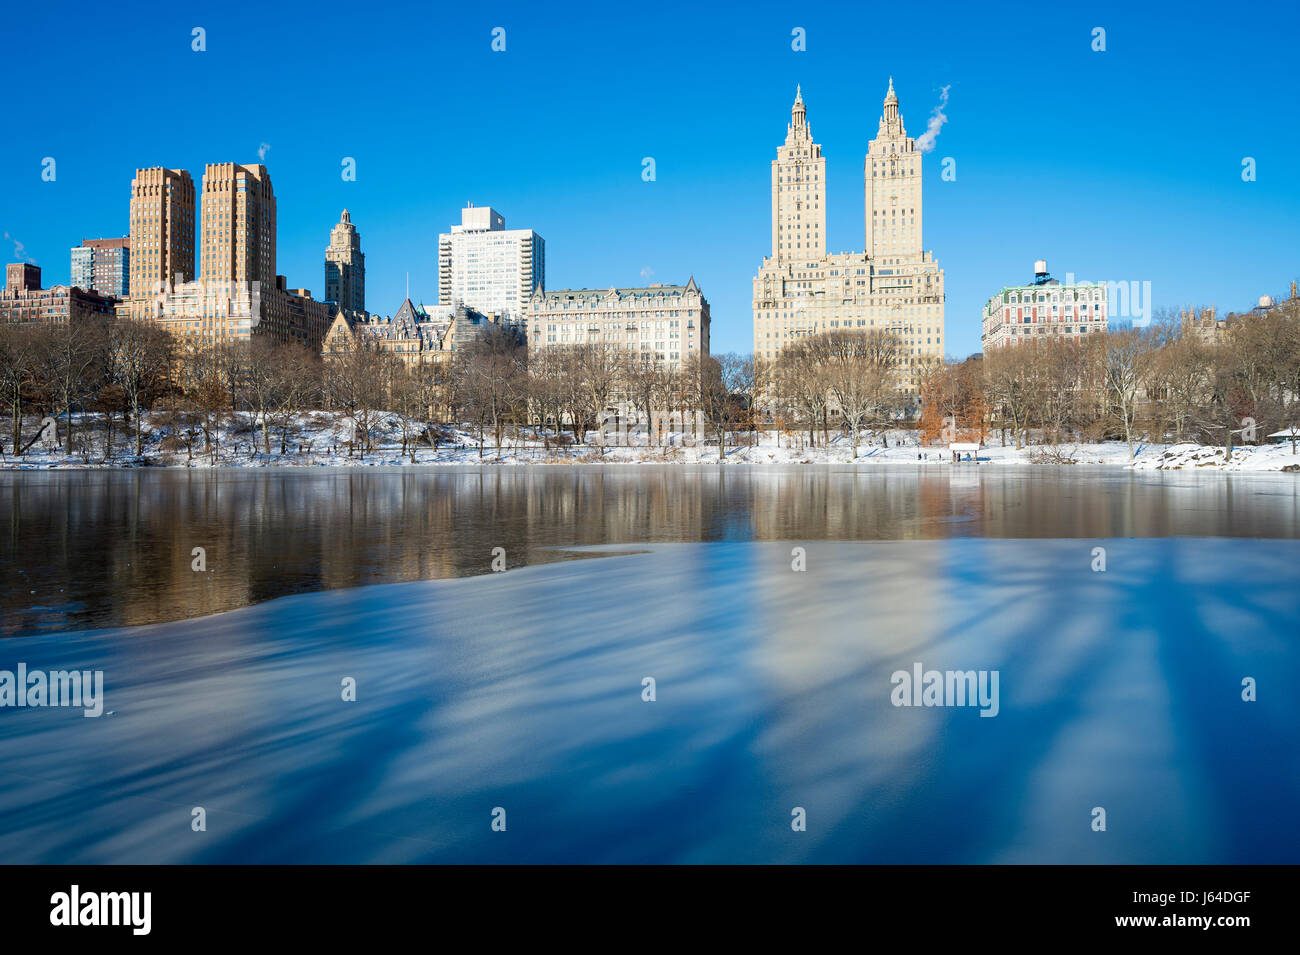 Malerische Aussicht auf die Upper West Side-Skyline reflektiert im Eis der zugefrorenen Central Park-See am Morgen nach einem New York City Winter Schneesturm Stockfoto